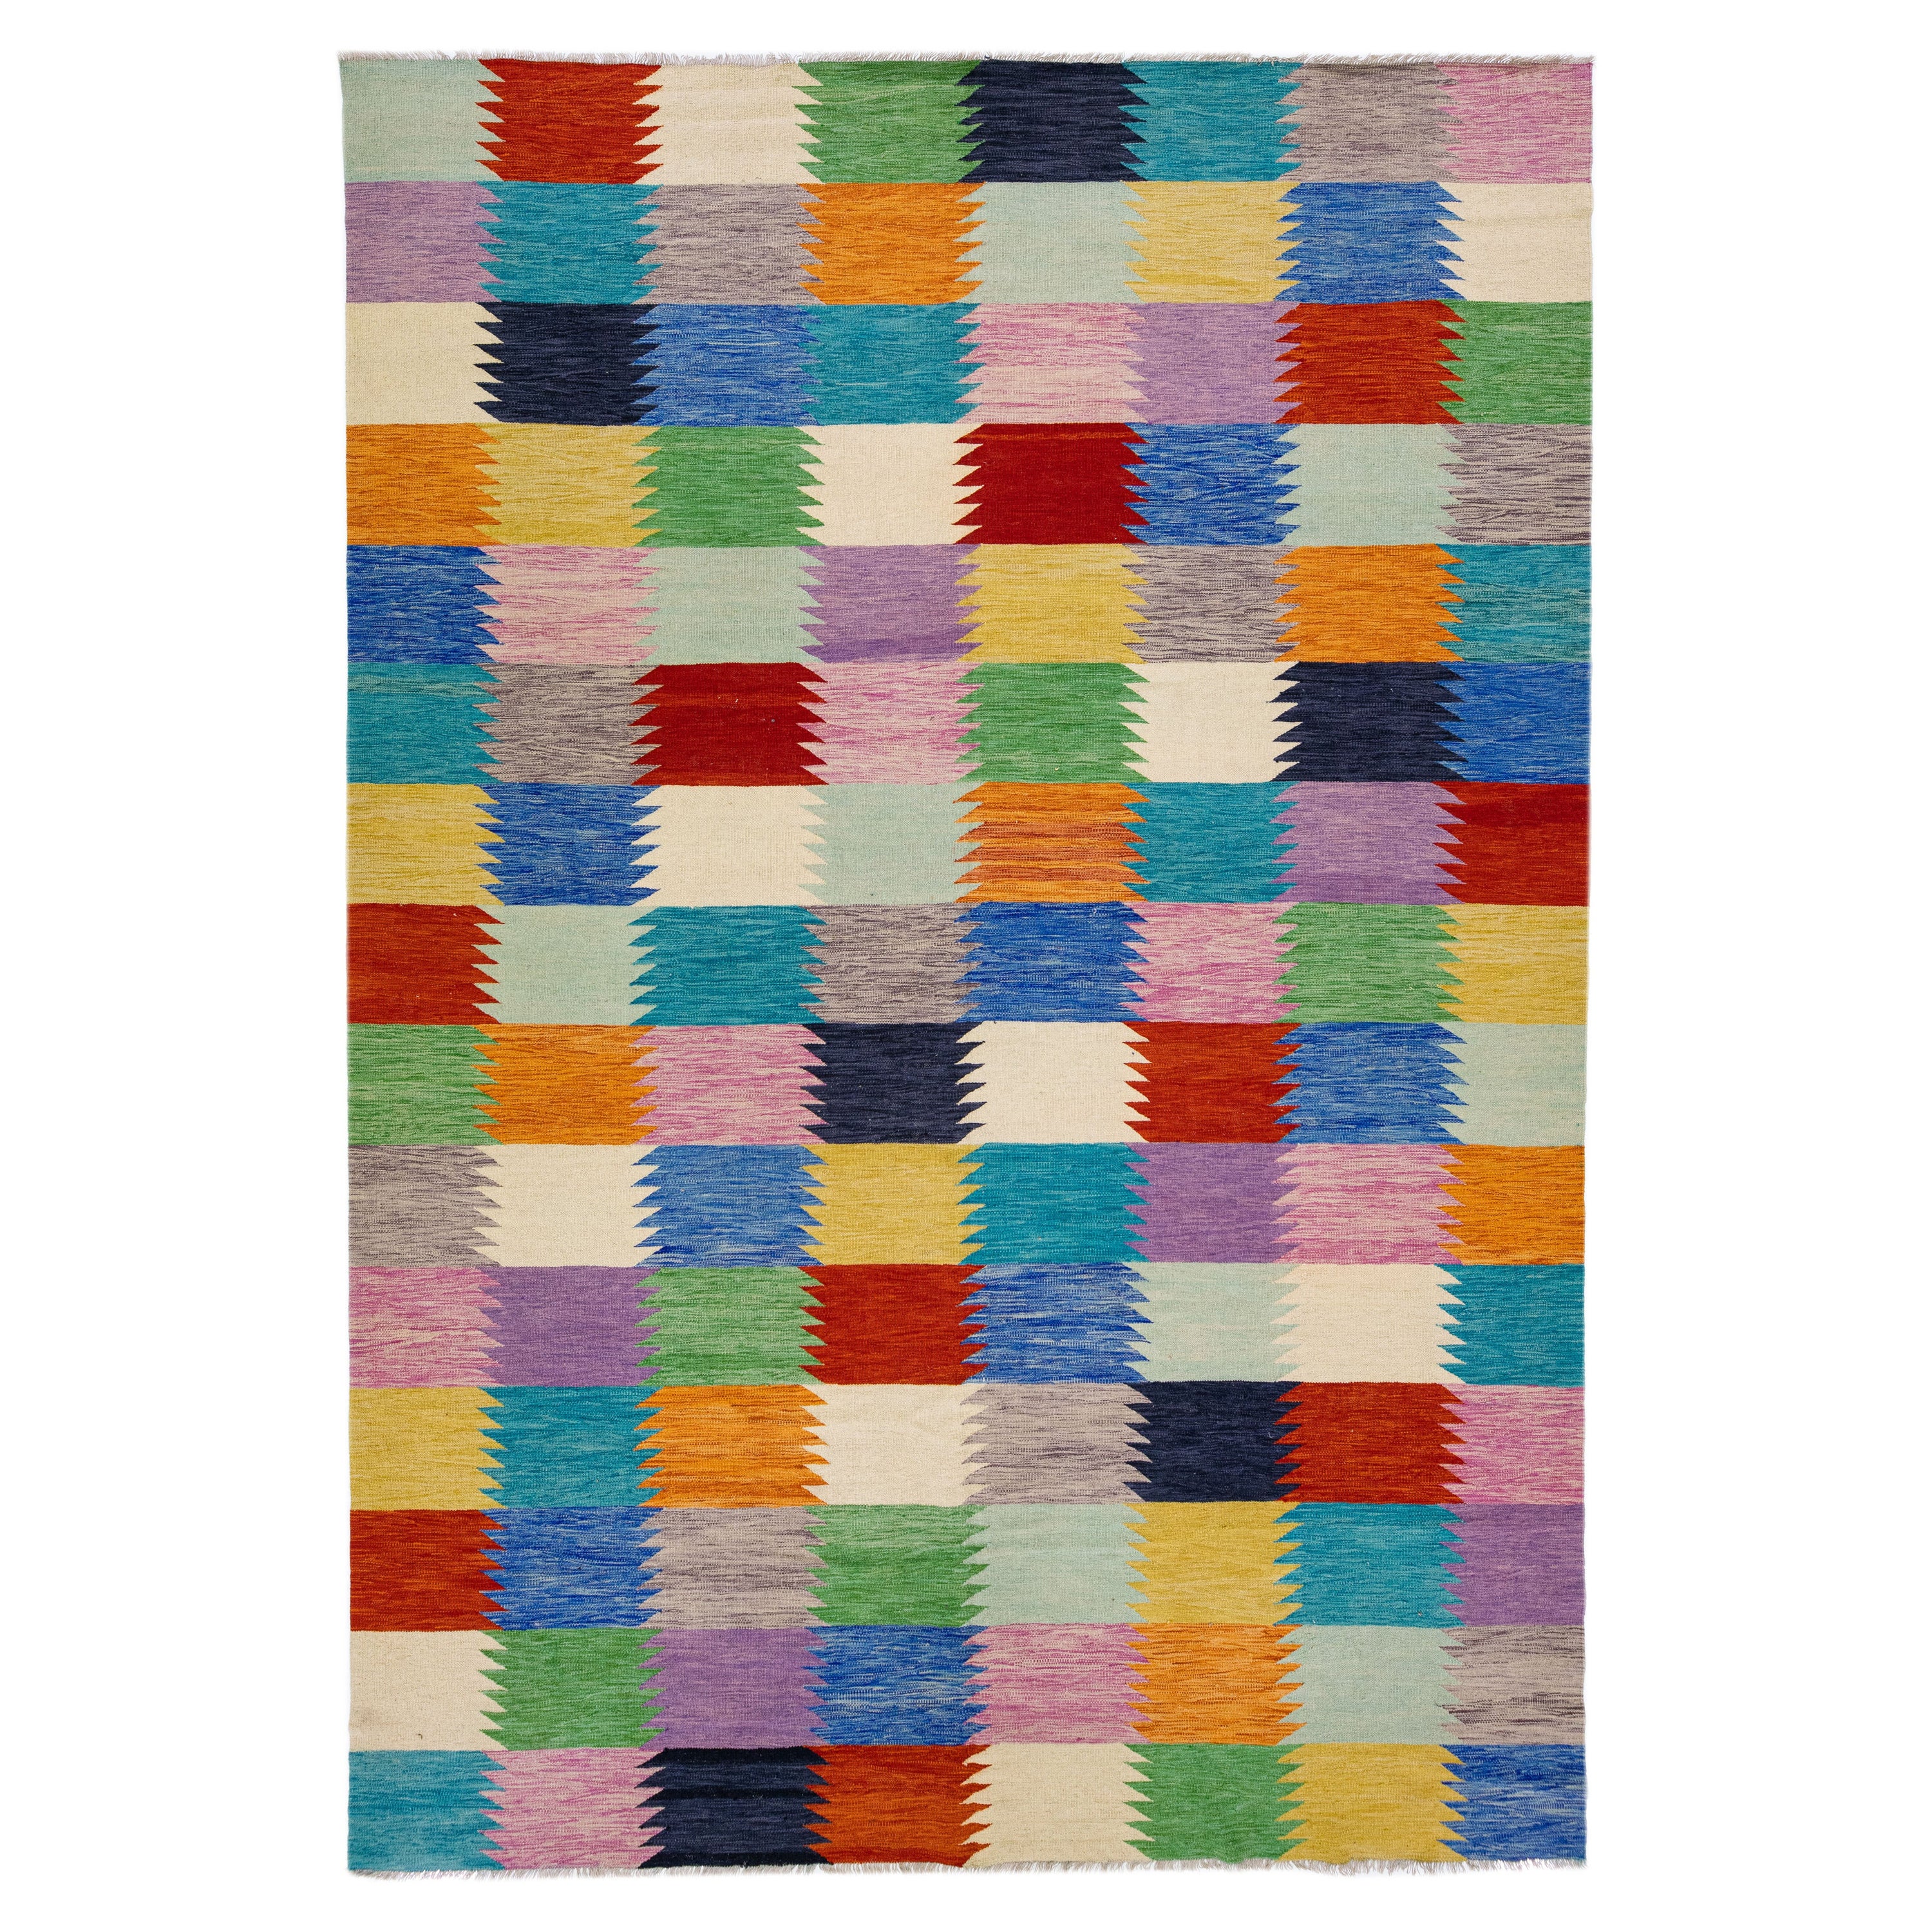 Rug & Kilim multicolore, géométrique, moderne et tissé à plat